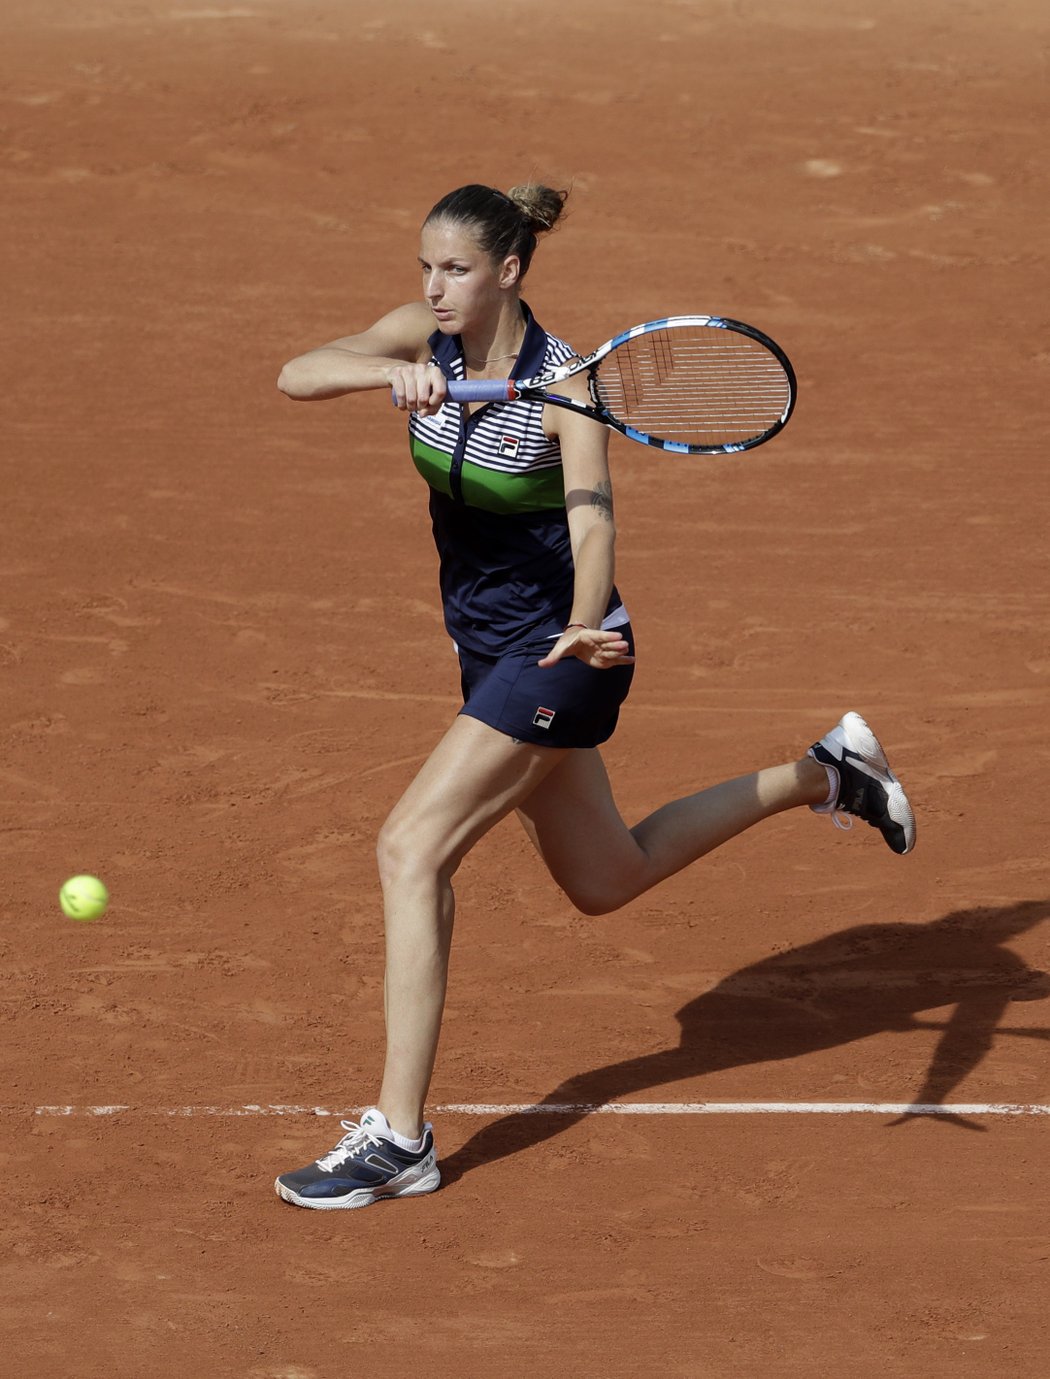 Česká tenistka Karolína Plíšková na grandslamovém French Open, kde v prvním kole porazila čínskou tenistku Čeng Saj-saj